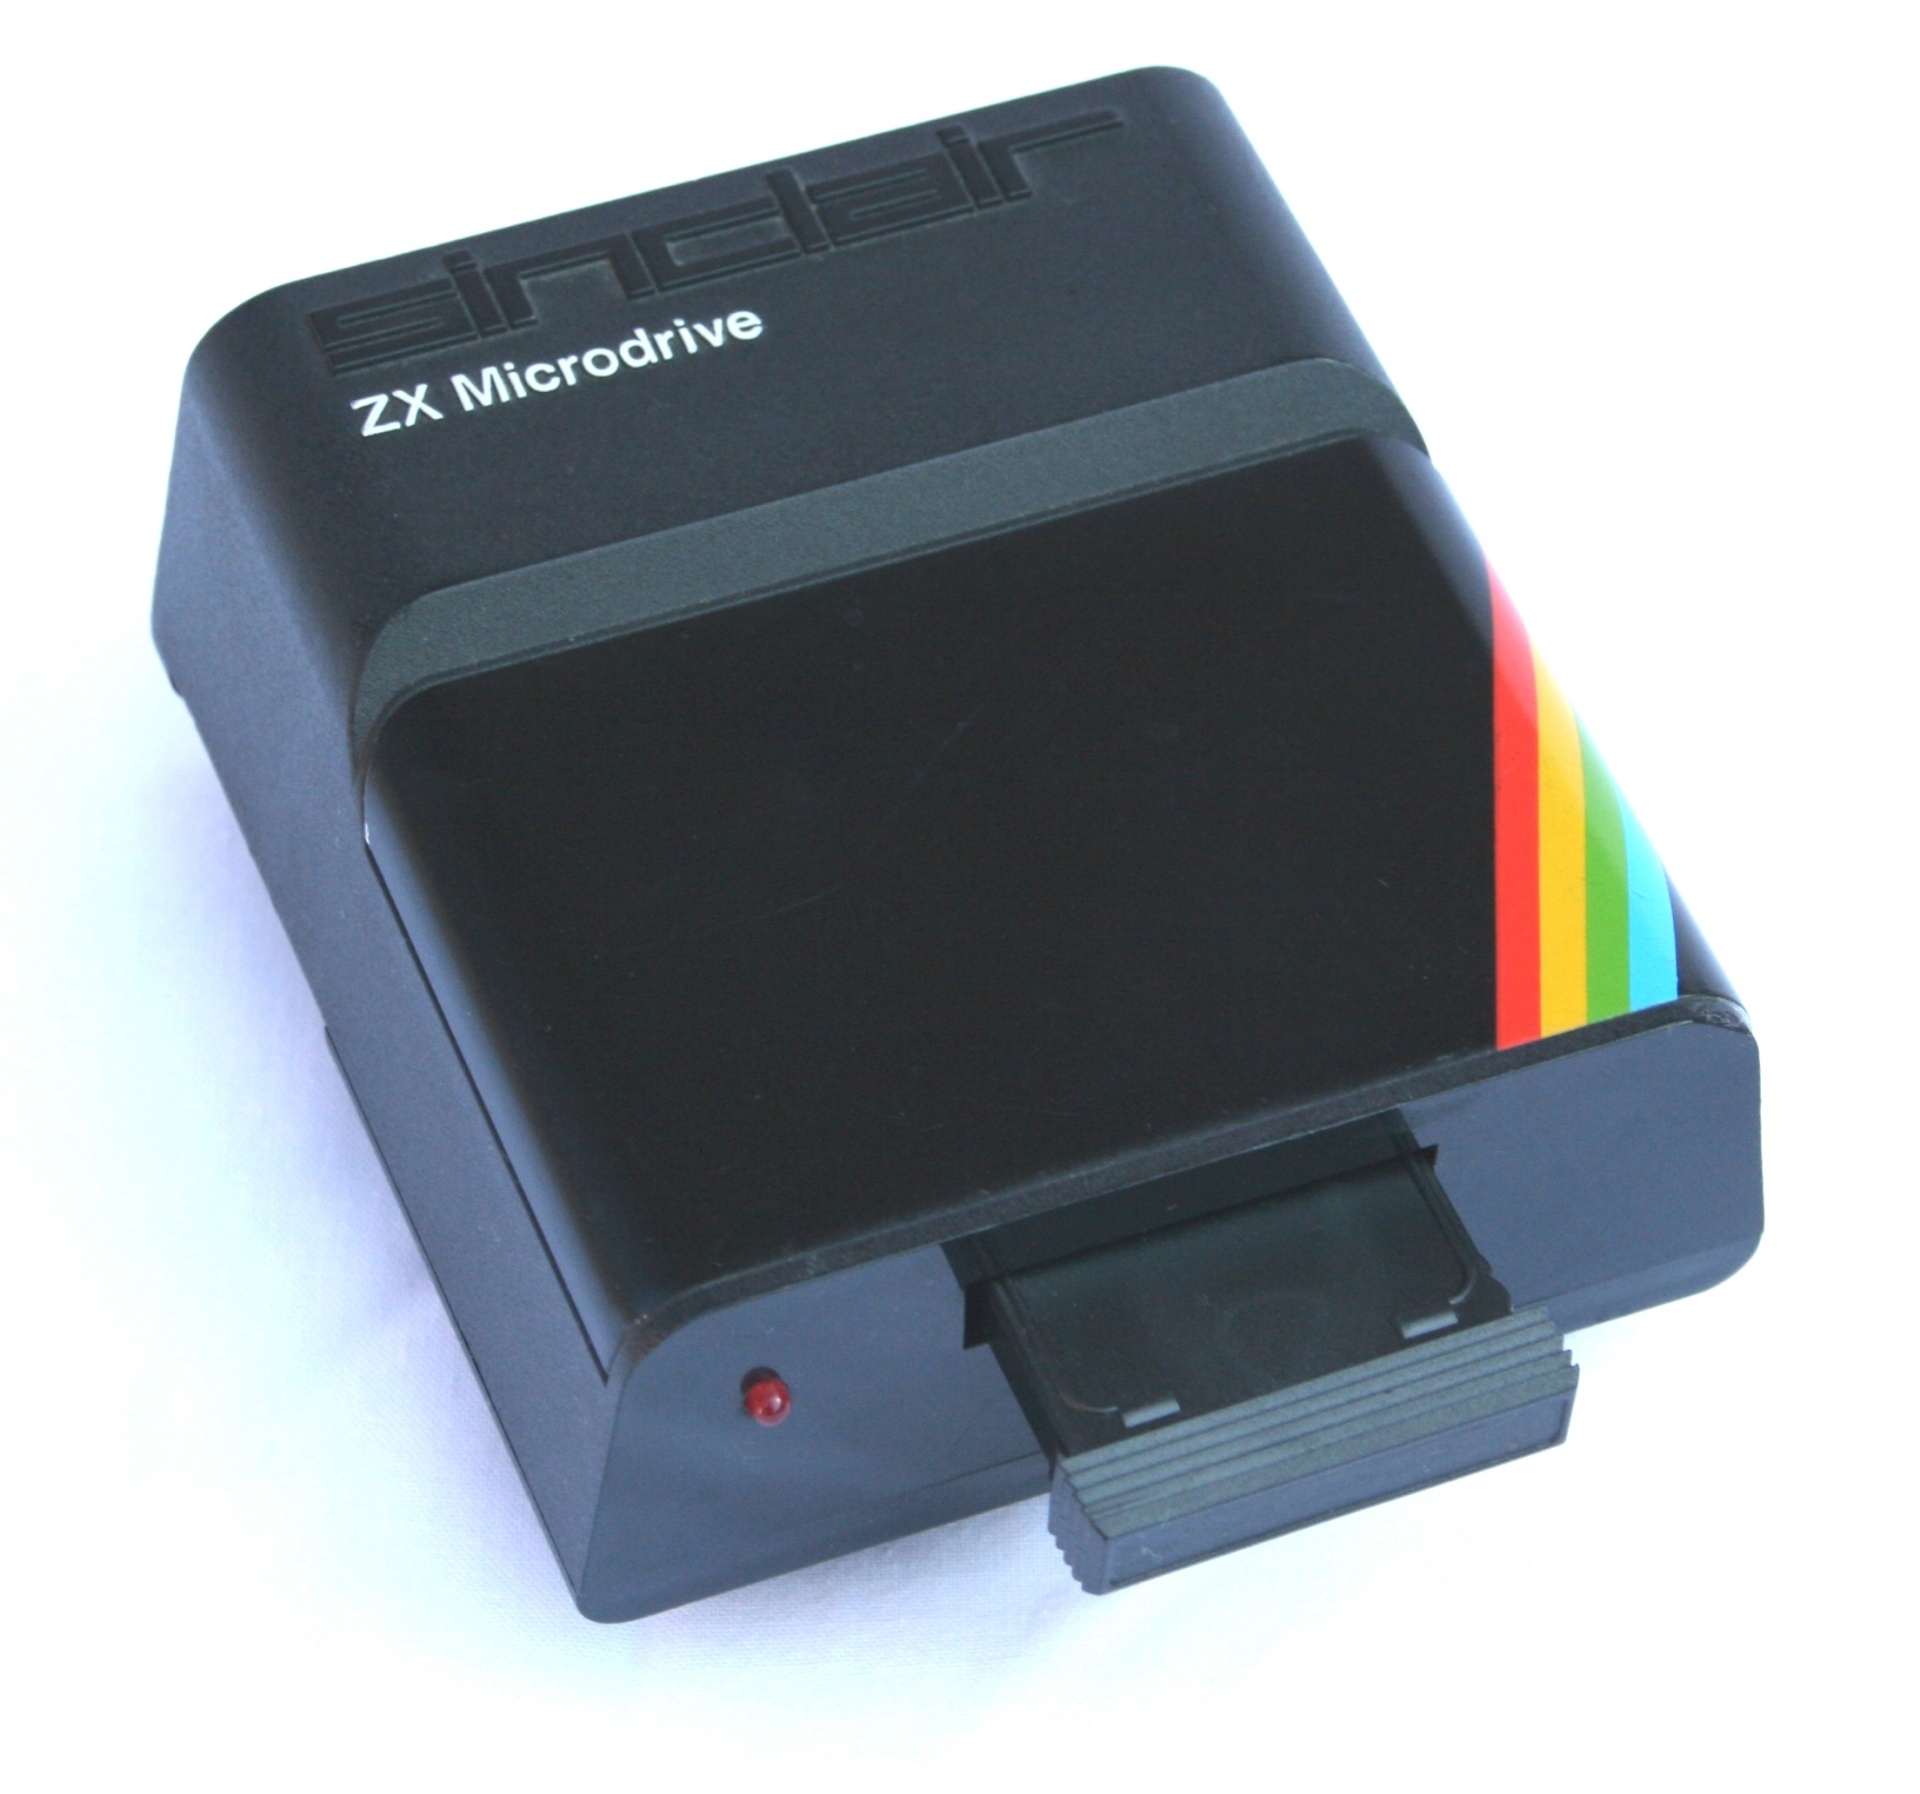 Senas,  Pasenusi,  Sinclair,  Zx,  Spektras,  Microdrive,  Sąsaja & Nbsp,  1,  8 Bitų,  Technologija